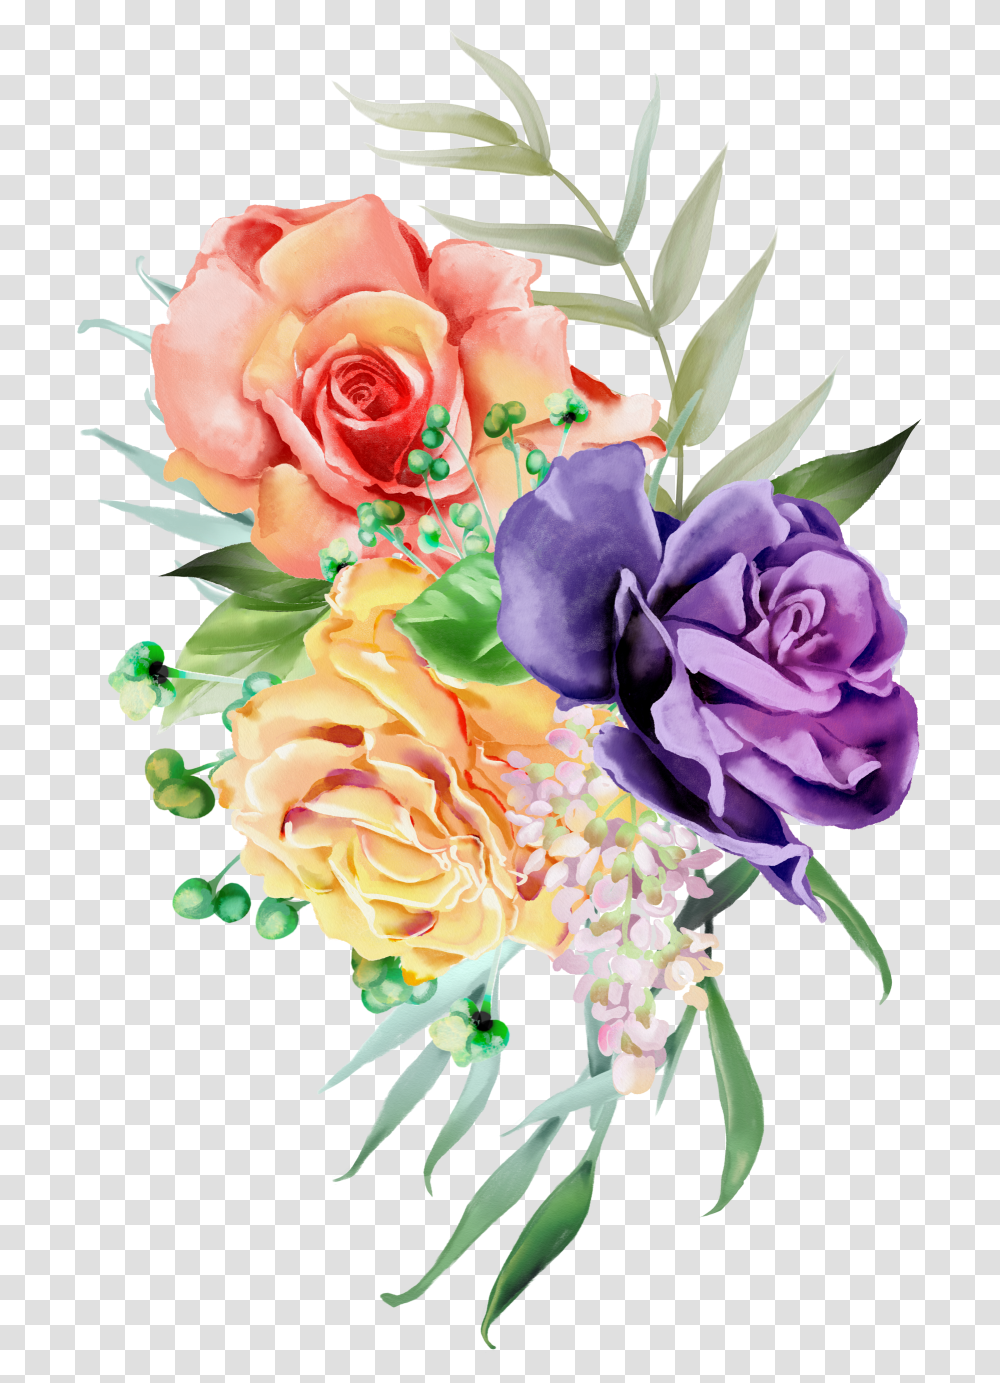 Floral Crown Wreath, Plant, Floral Design Transparent Png